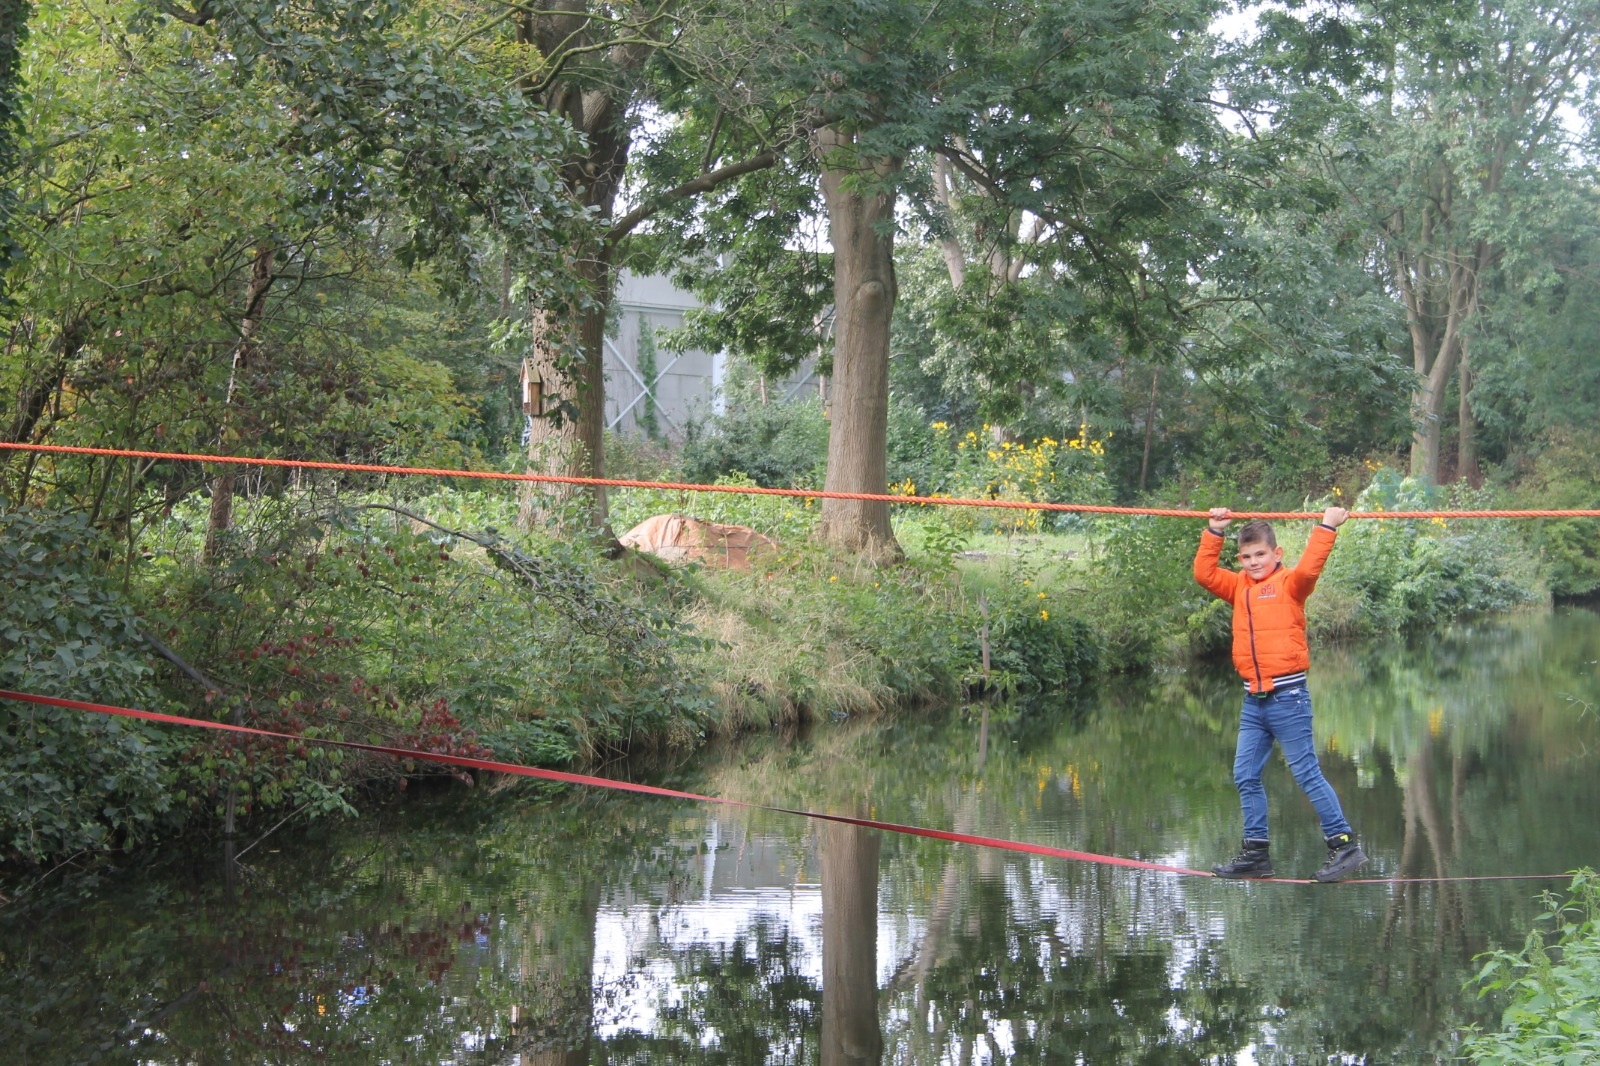 Een apenbrug over het water, een van de uitdagingen tijdens het Kids Powerrr Event 2020 van de Scouting Tono-groep.